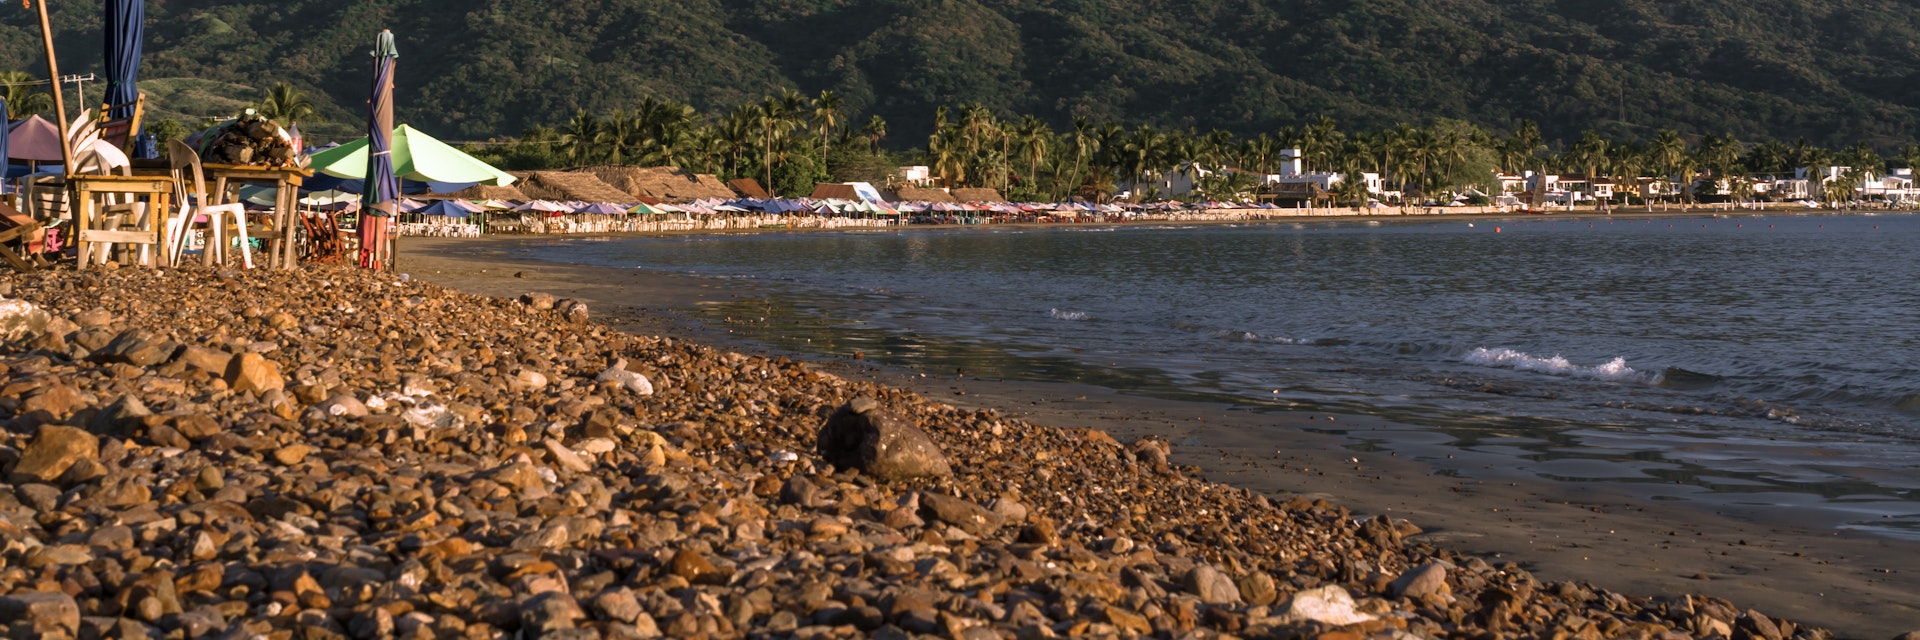 Boquita beach in Manzanillo, Colima, Mexico.